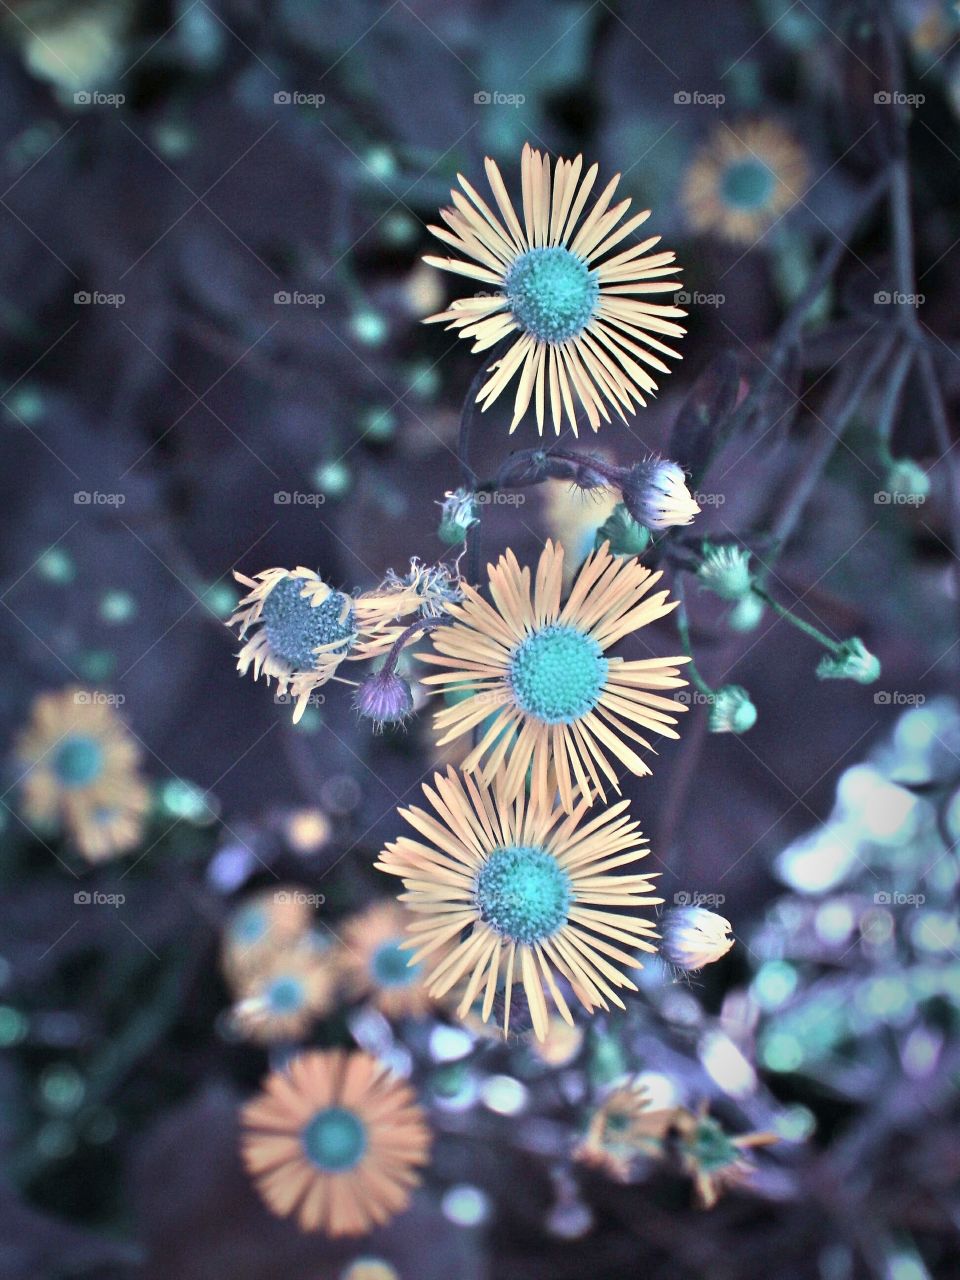 flowers in blue